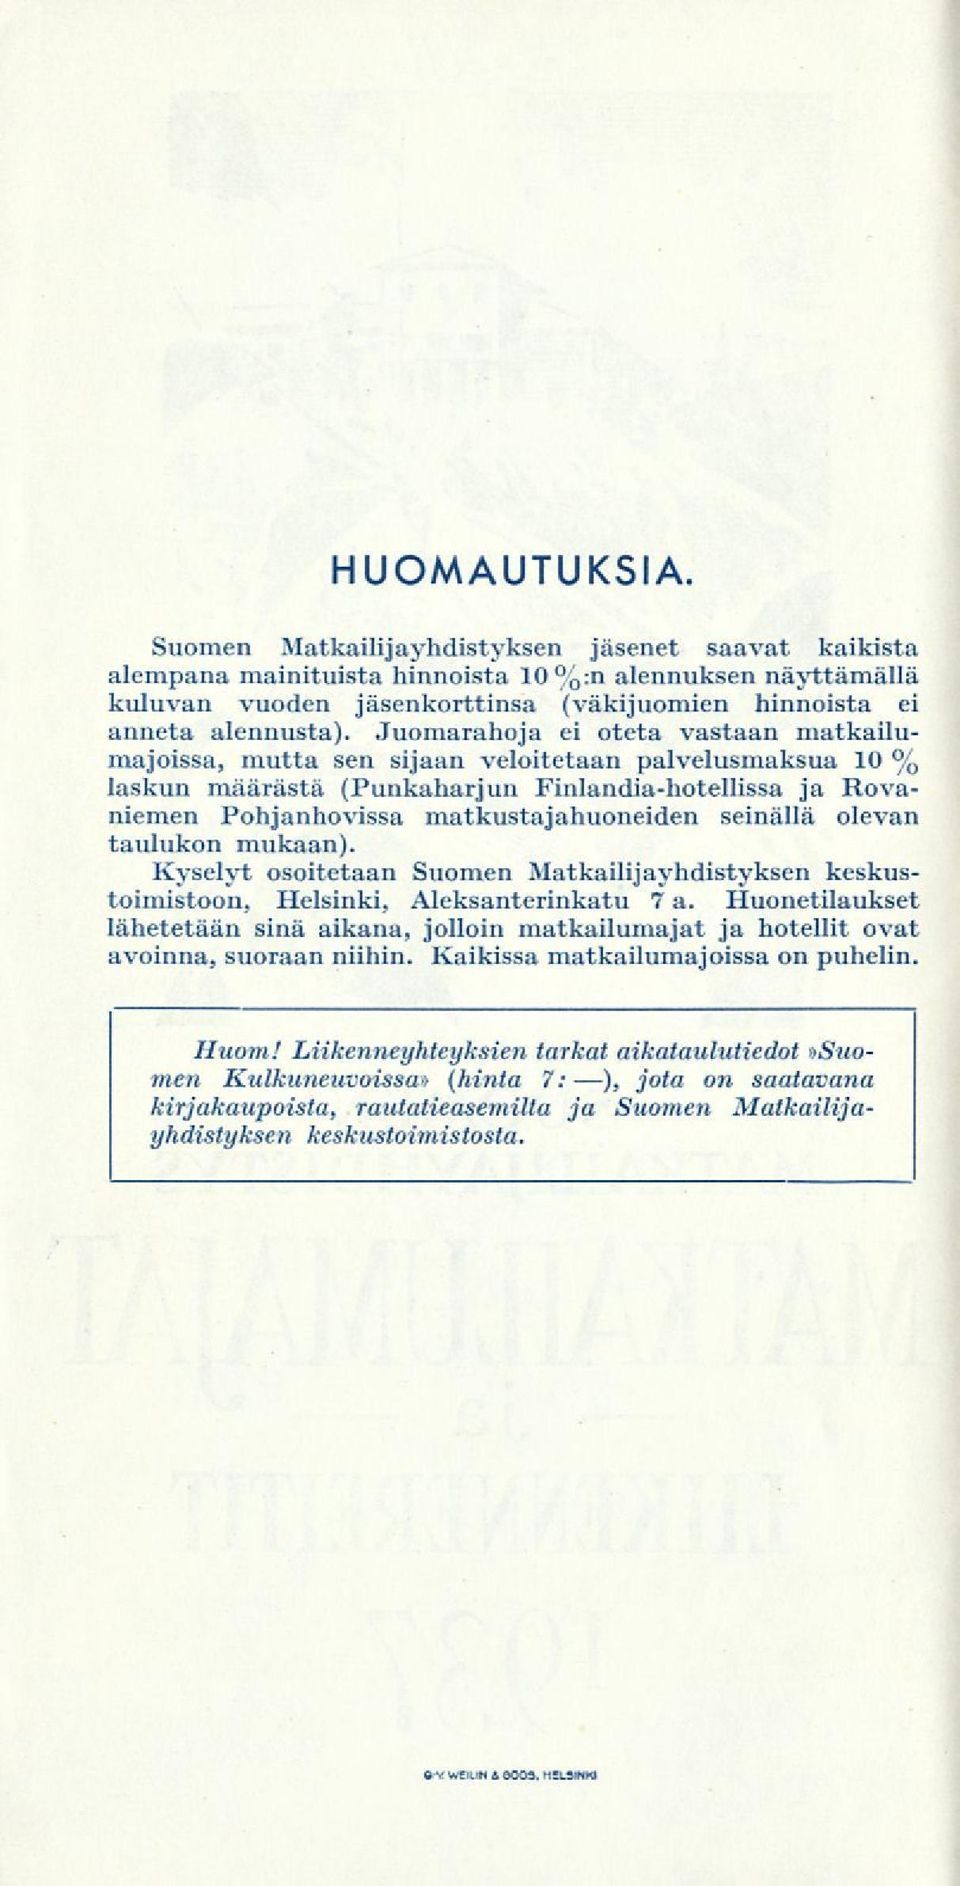 seinällä olevan taulukon mukaan). Kyselyt osoitetaan Suomen Matkailijayhdistyksen keskustoimistoon, Helsinki, Aleksanterinkatu 7a.